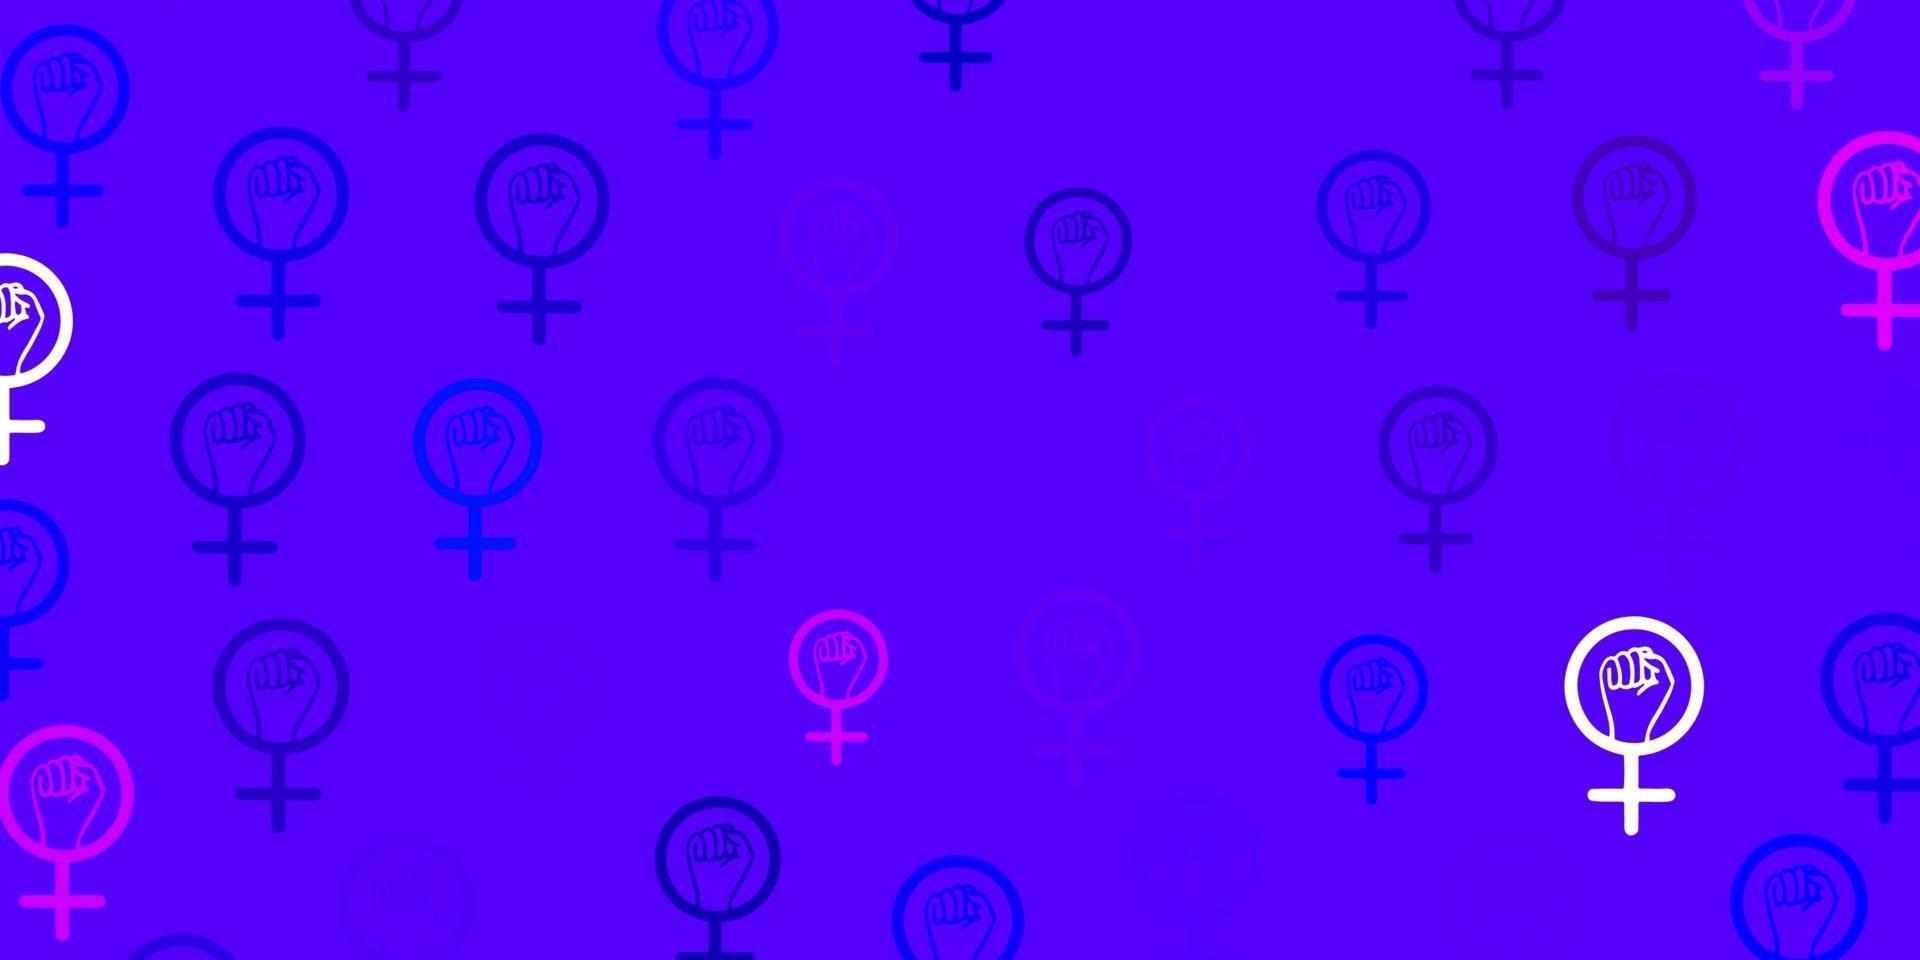 modello vettoriale rosa chiaro, blu con elementi di femminismo.